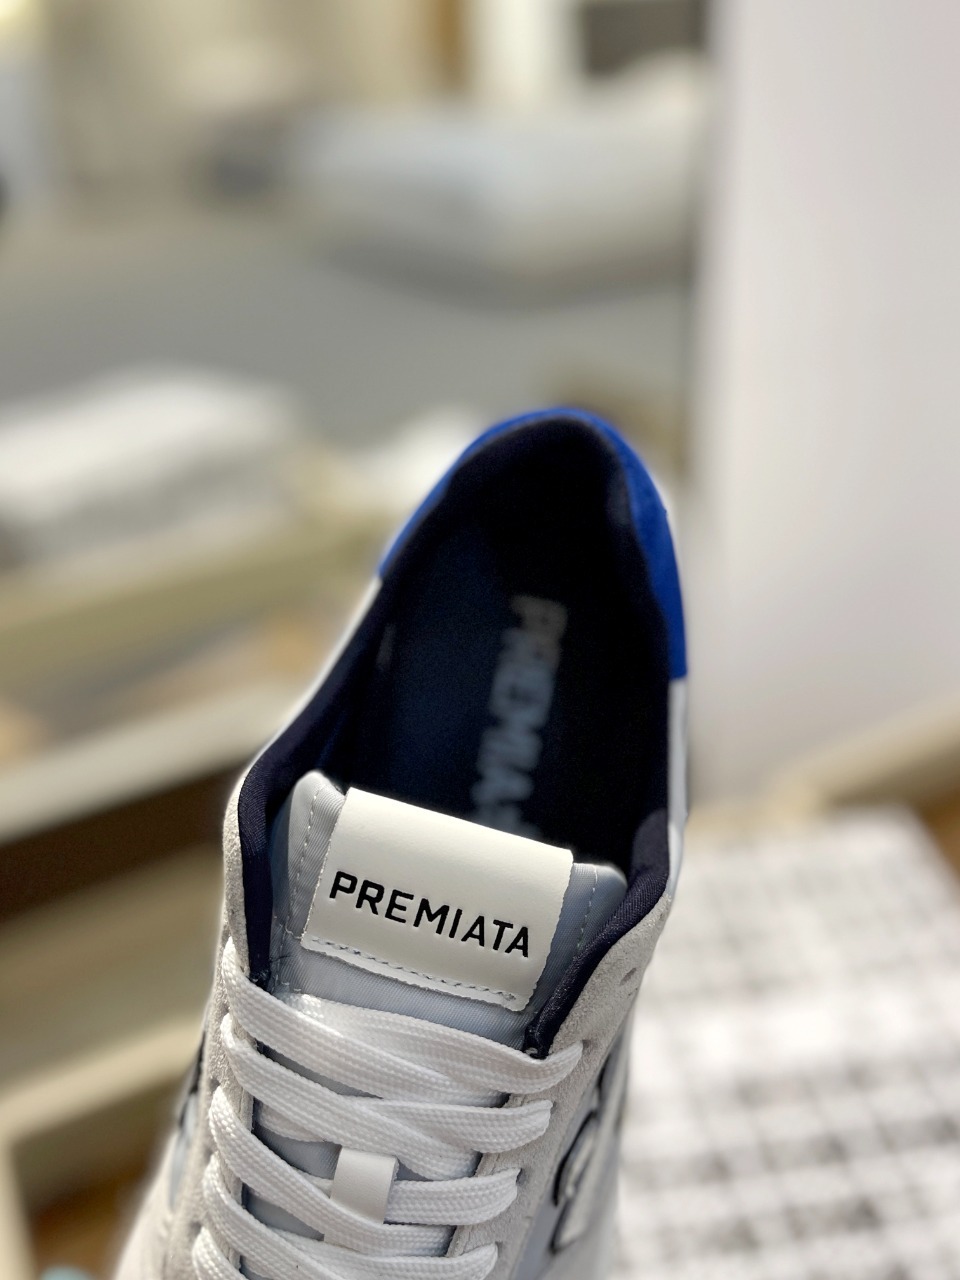 普瑞米亚达PremiataLanderTrainers兰诺系列米字低帮复古百搭休闲训练运动鞋鞋面牛反绒+